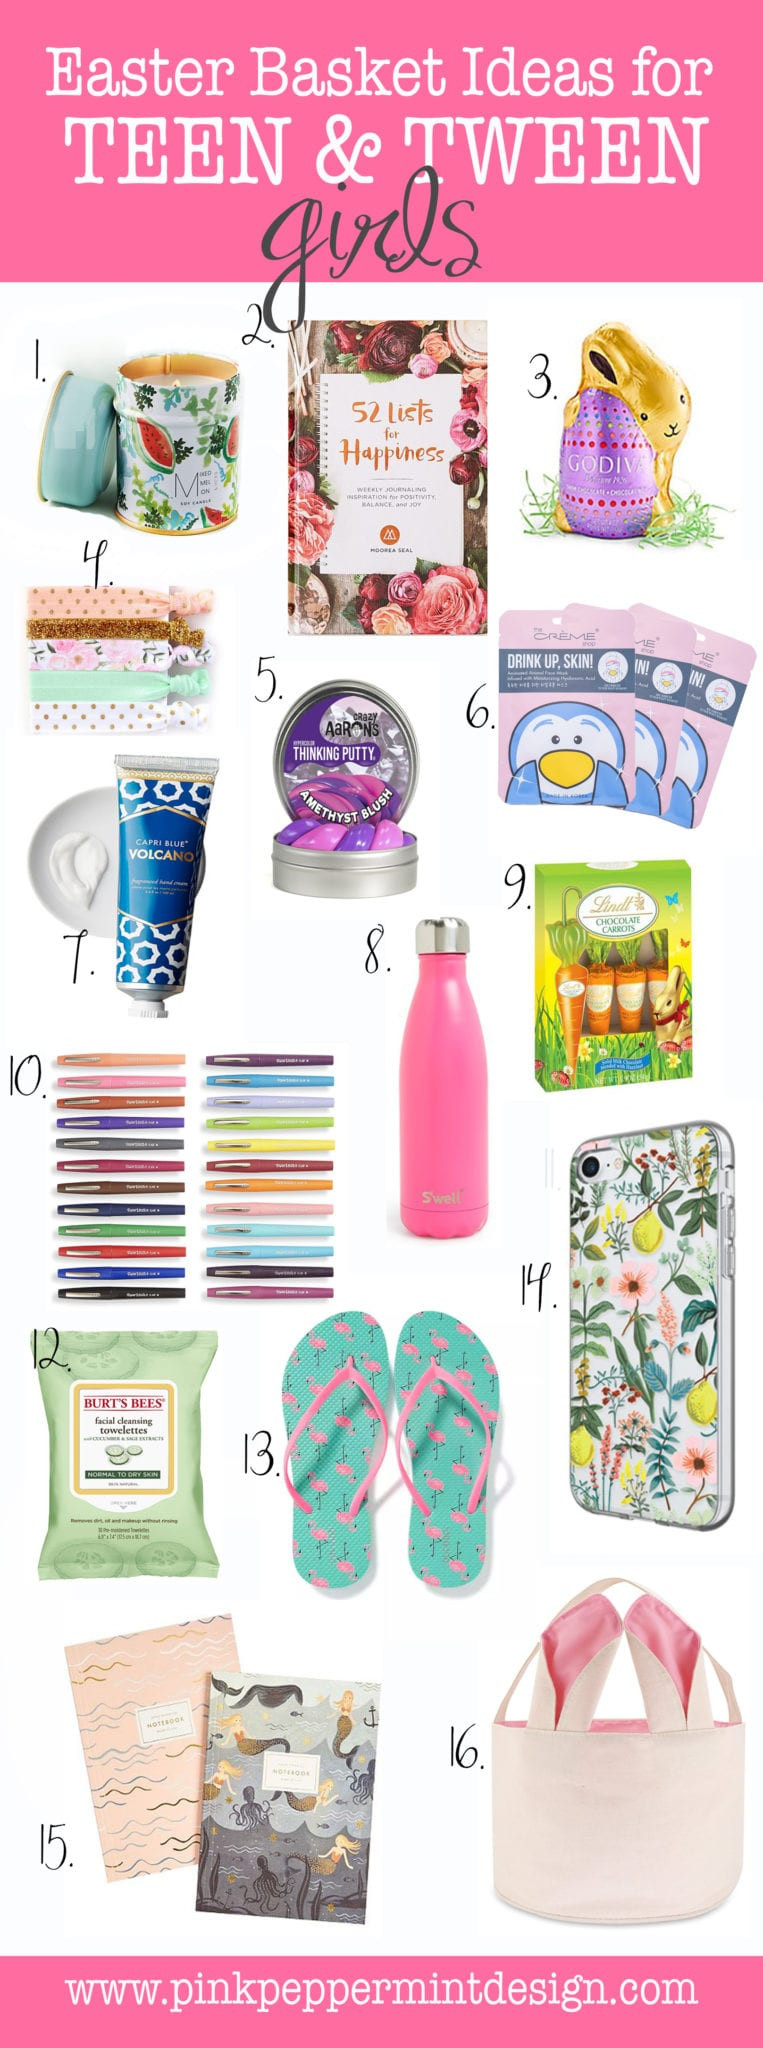 Tween Girl Easter Basket Ideas
 Best Easter Basket Gift Ideas for Tween & Teenage Girls